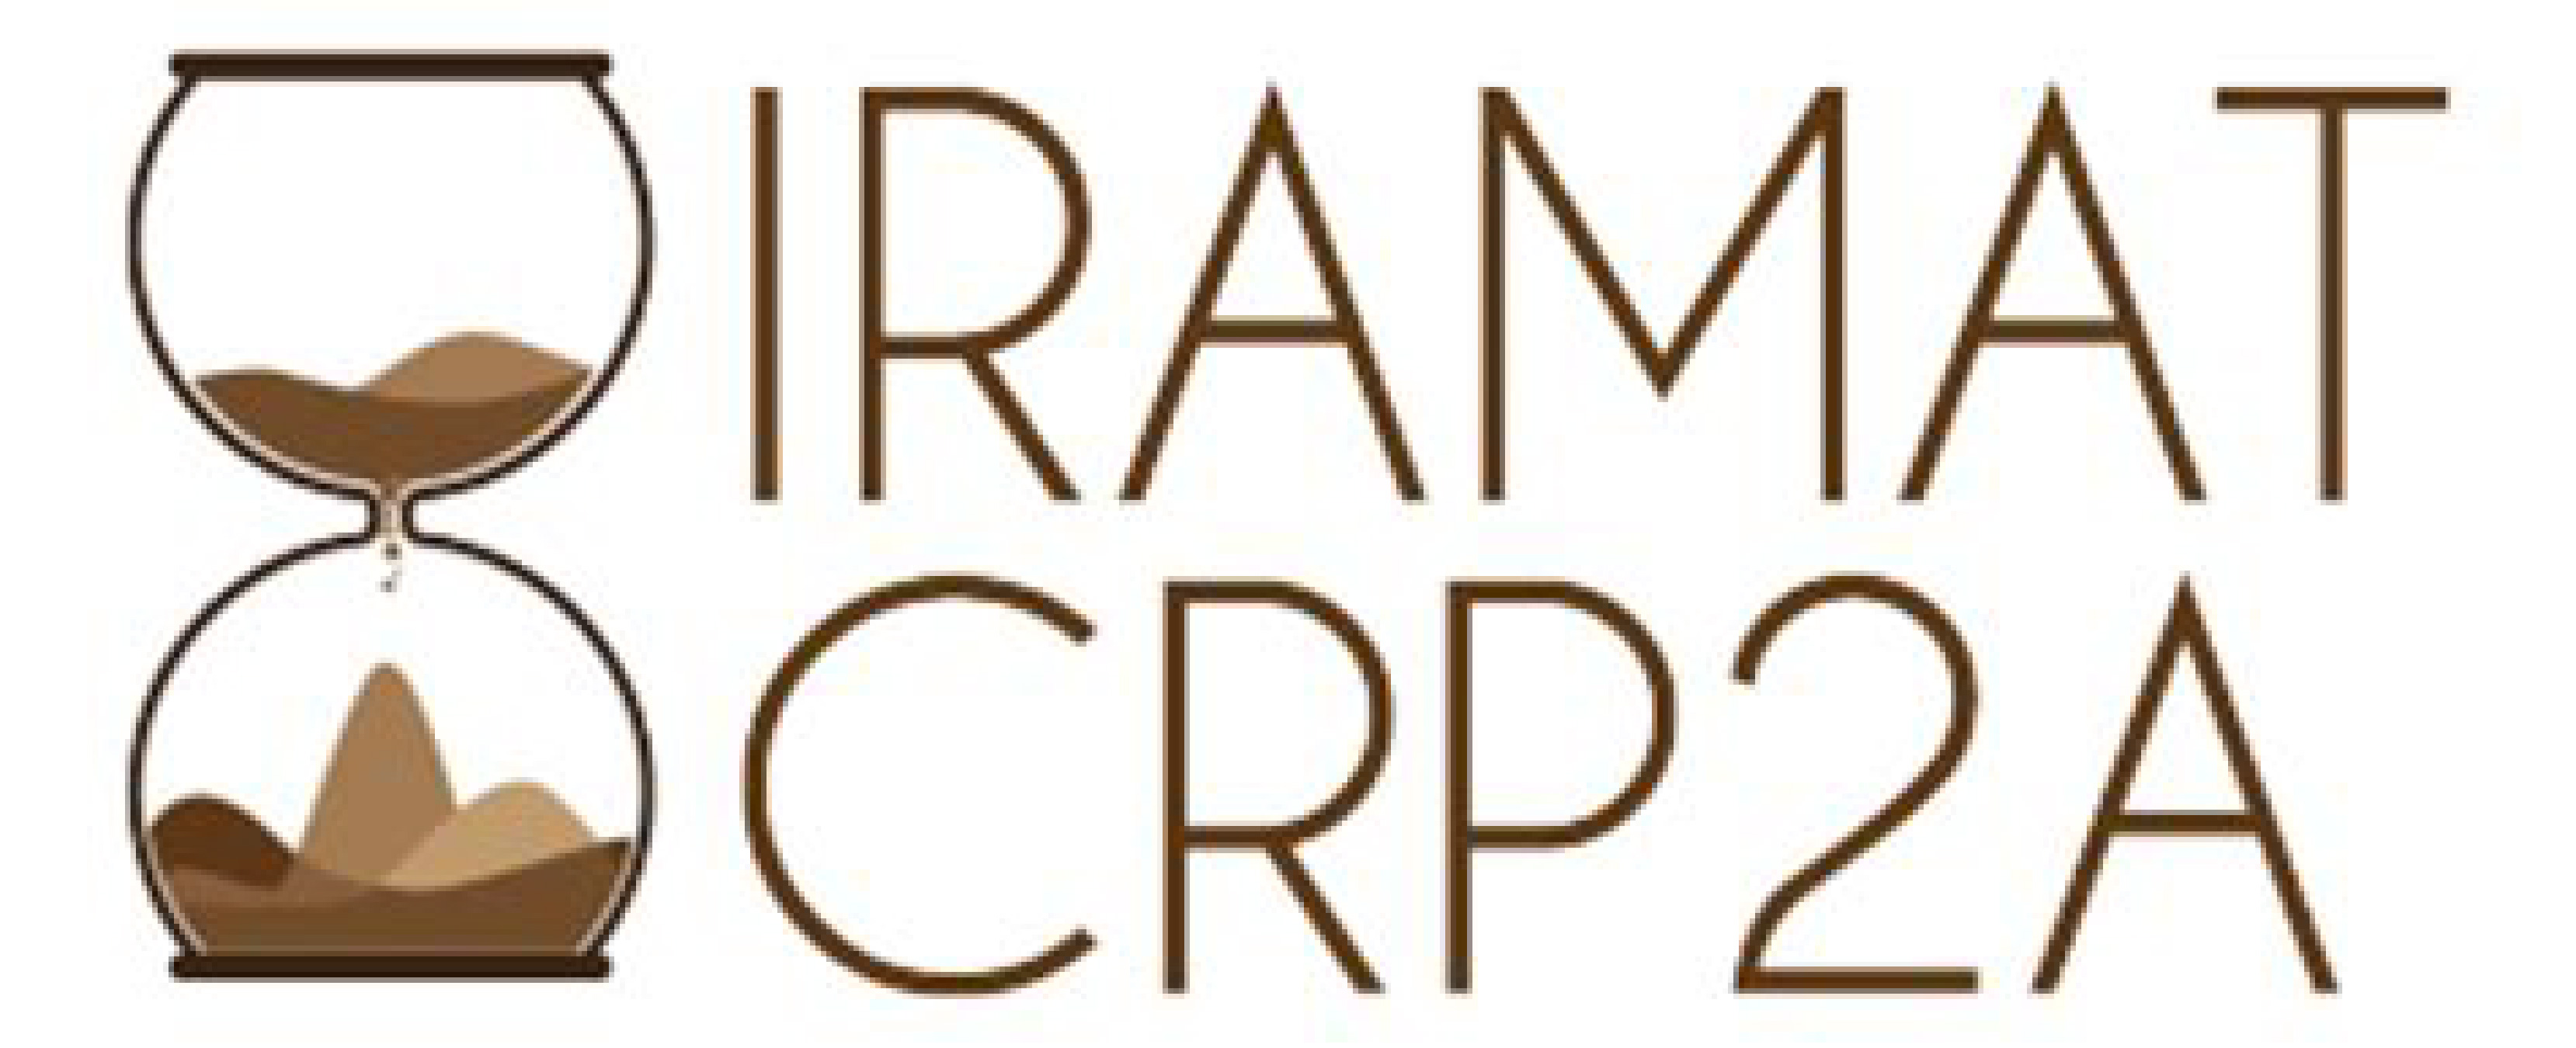 IRAMAT-CRP2A